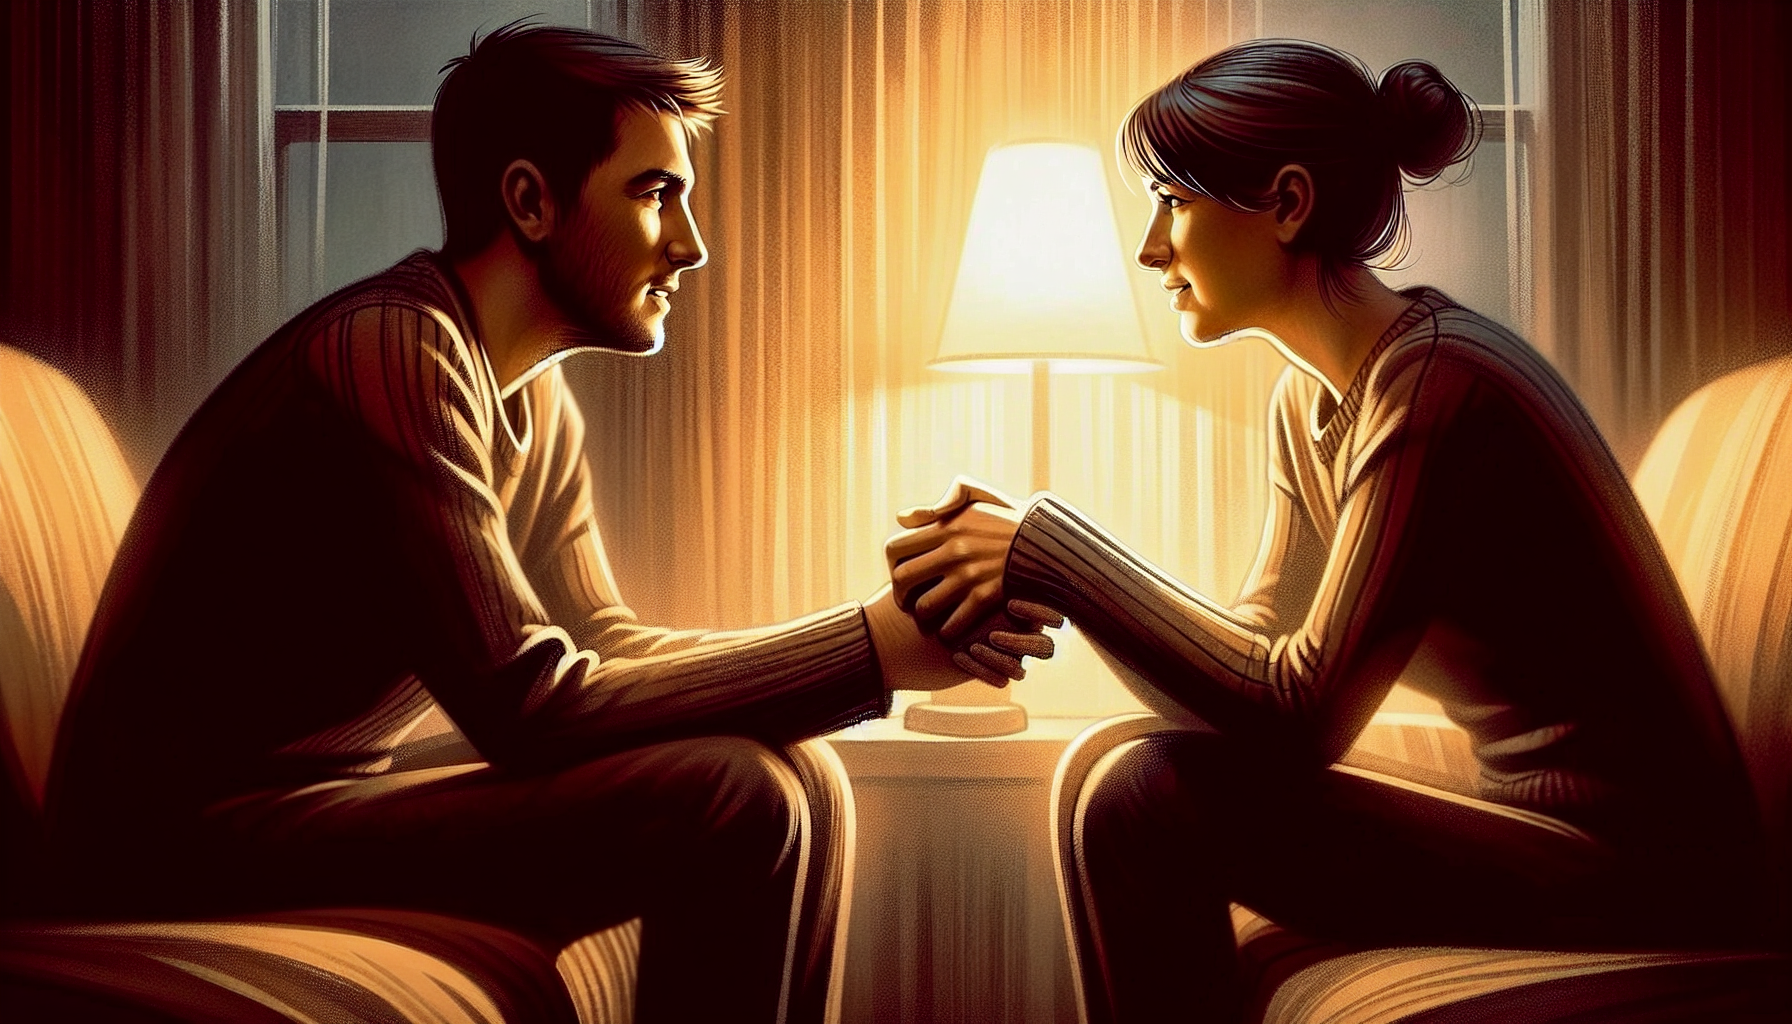 Illustration de personnes ayant une conversation empathique